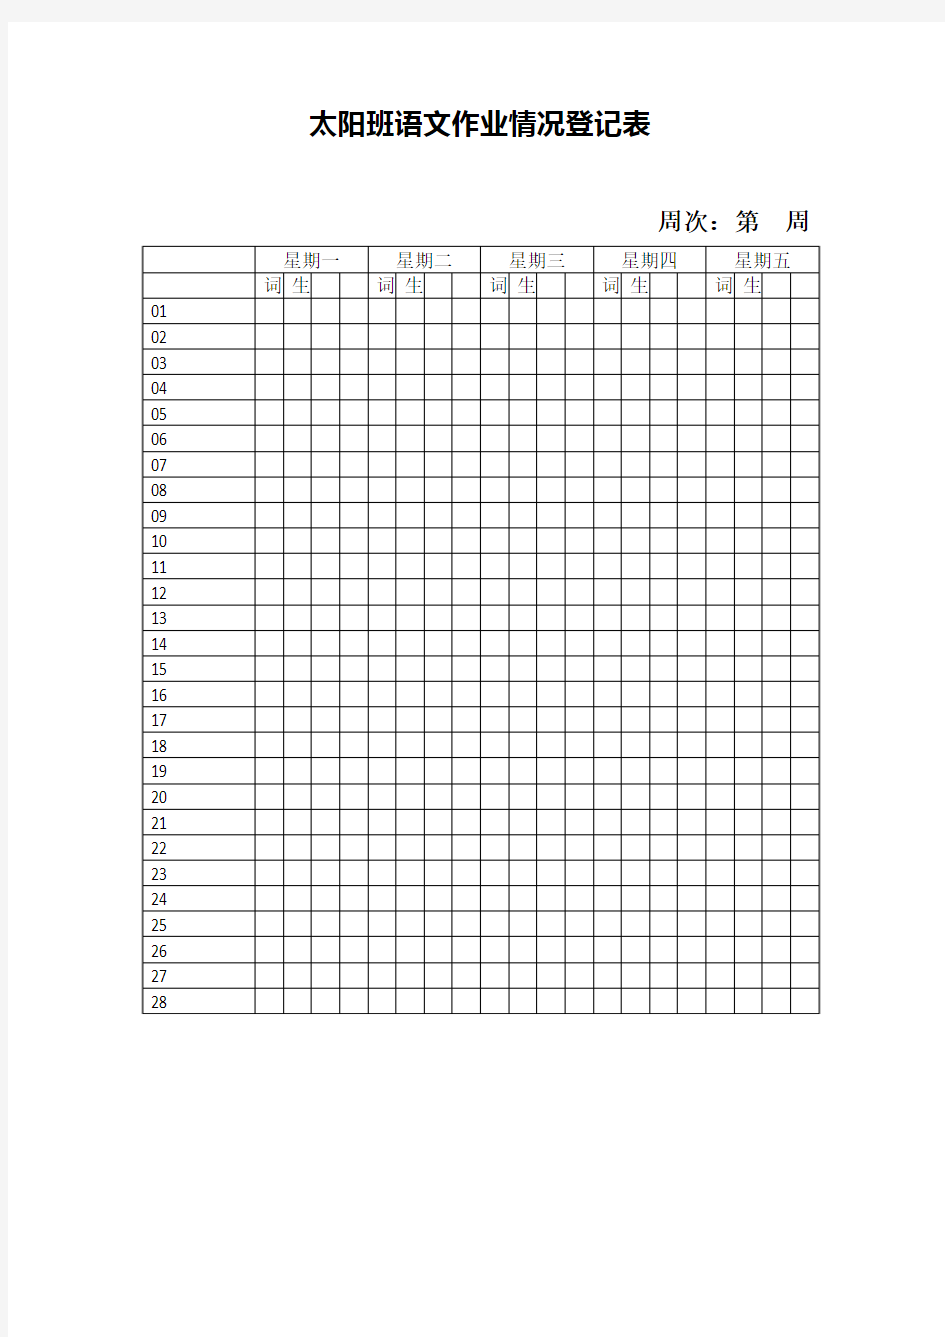 语文课堂作业本完成情况登记表